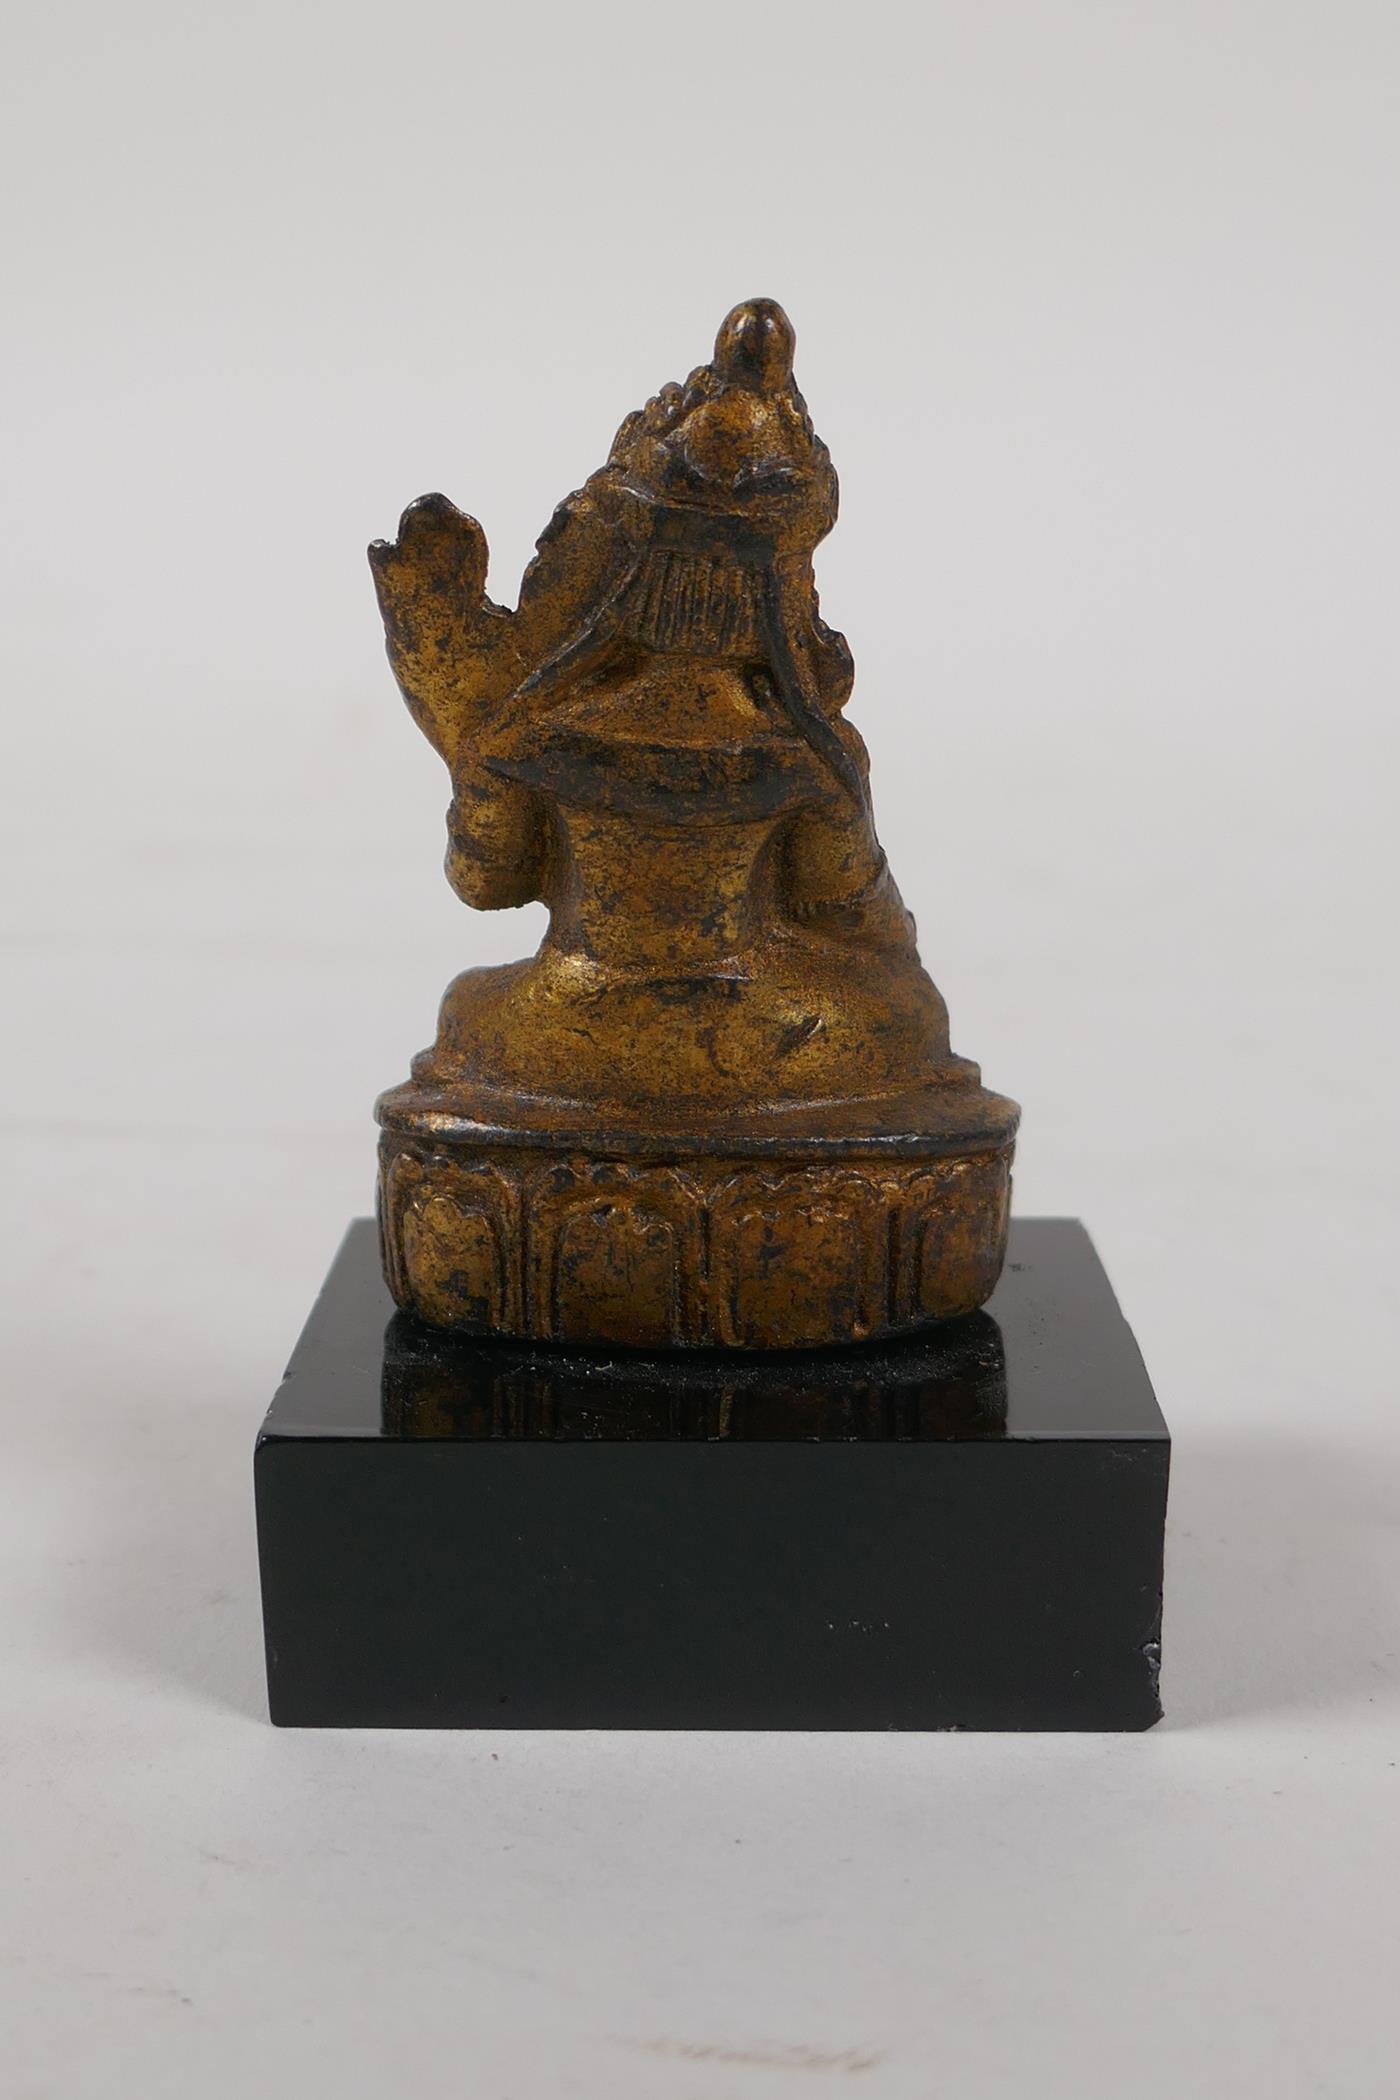 A Sino Tibetan gilt bronze figure of Buddha, on a display stand, 3" high - Image 2 of 2